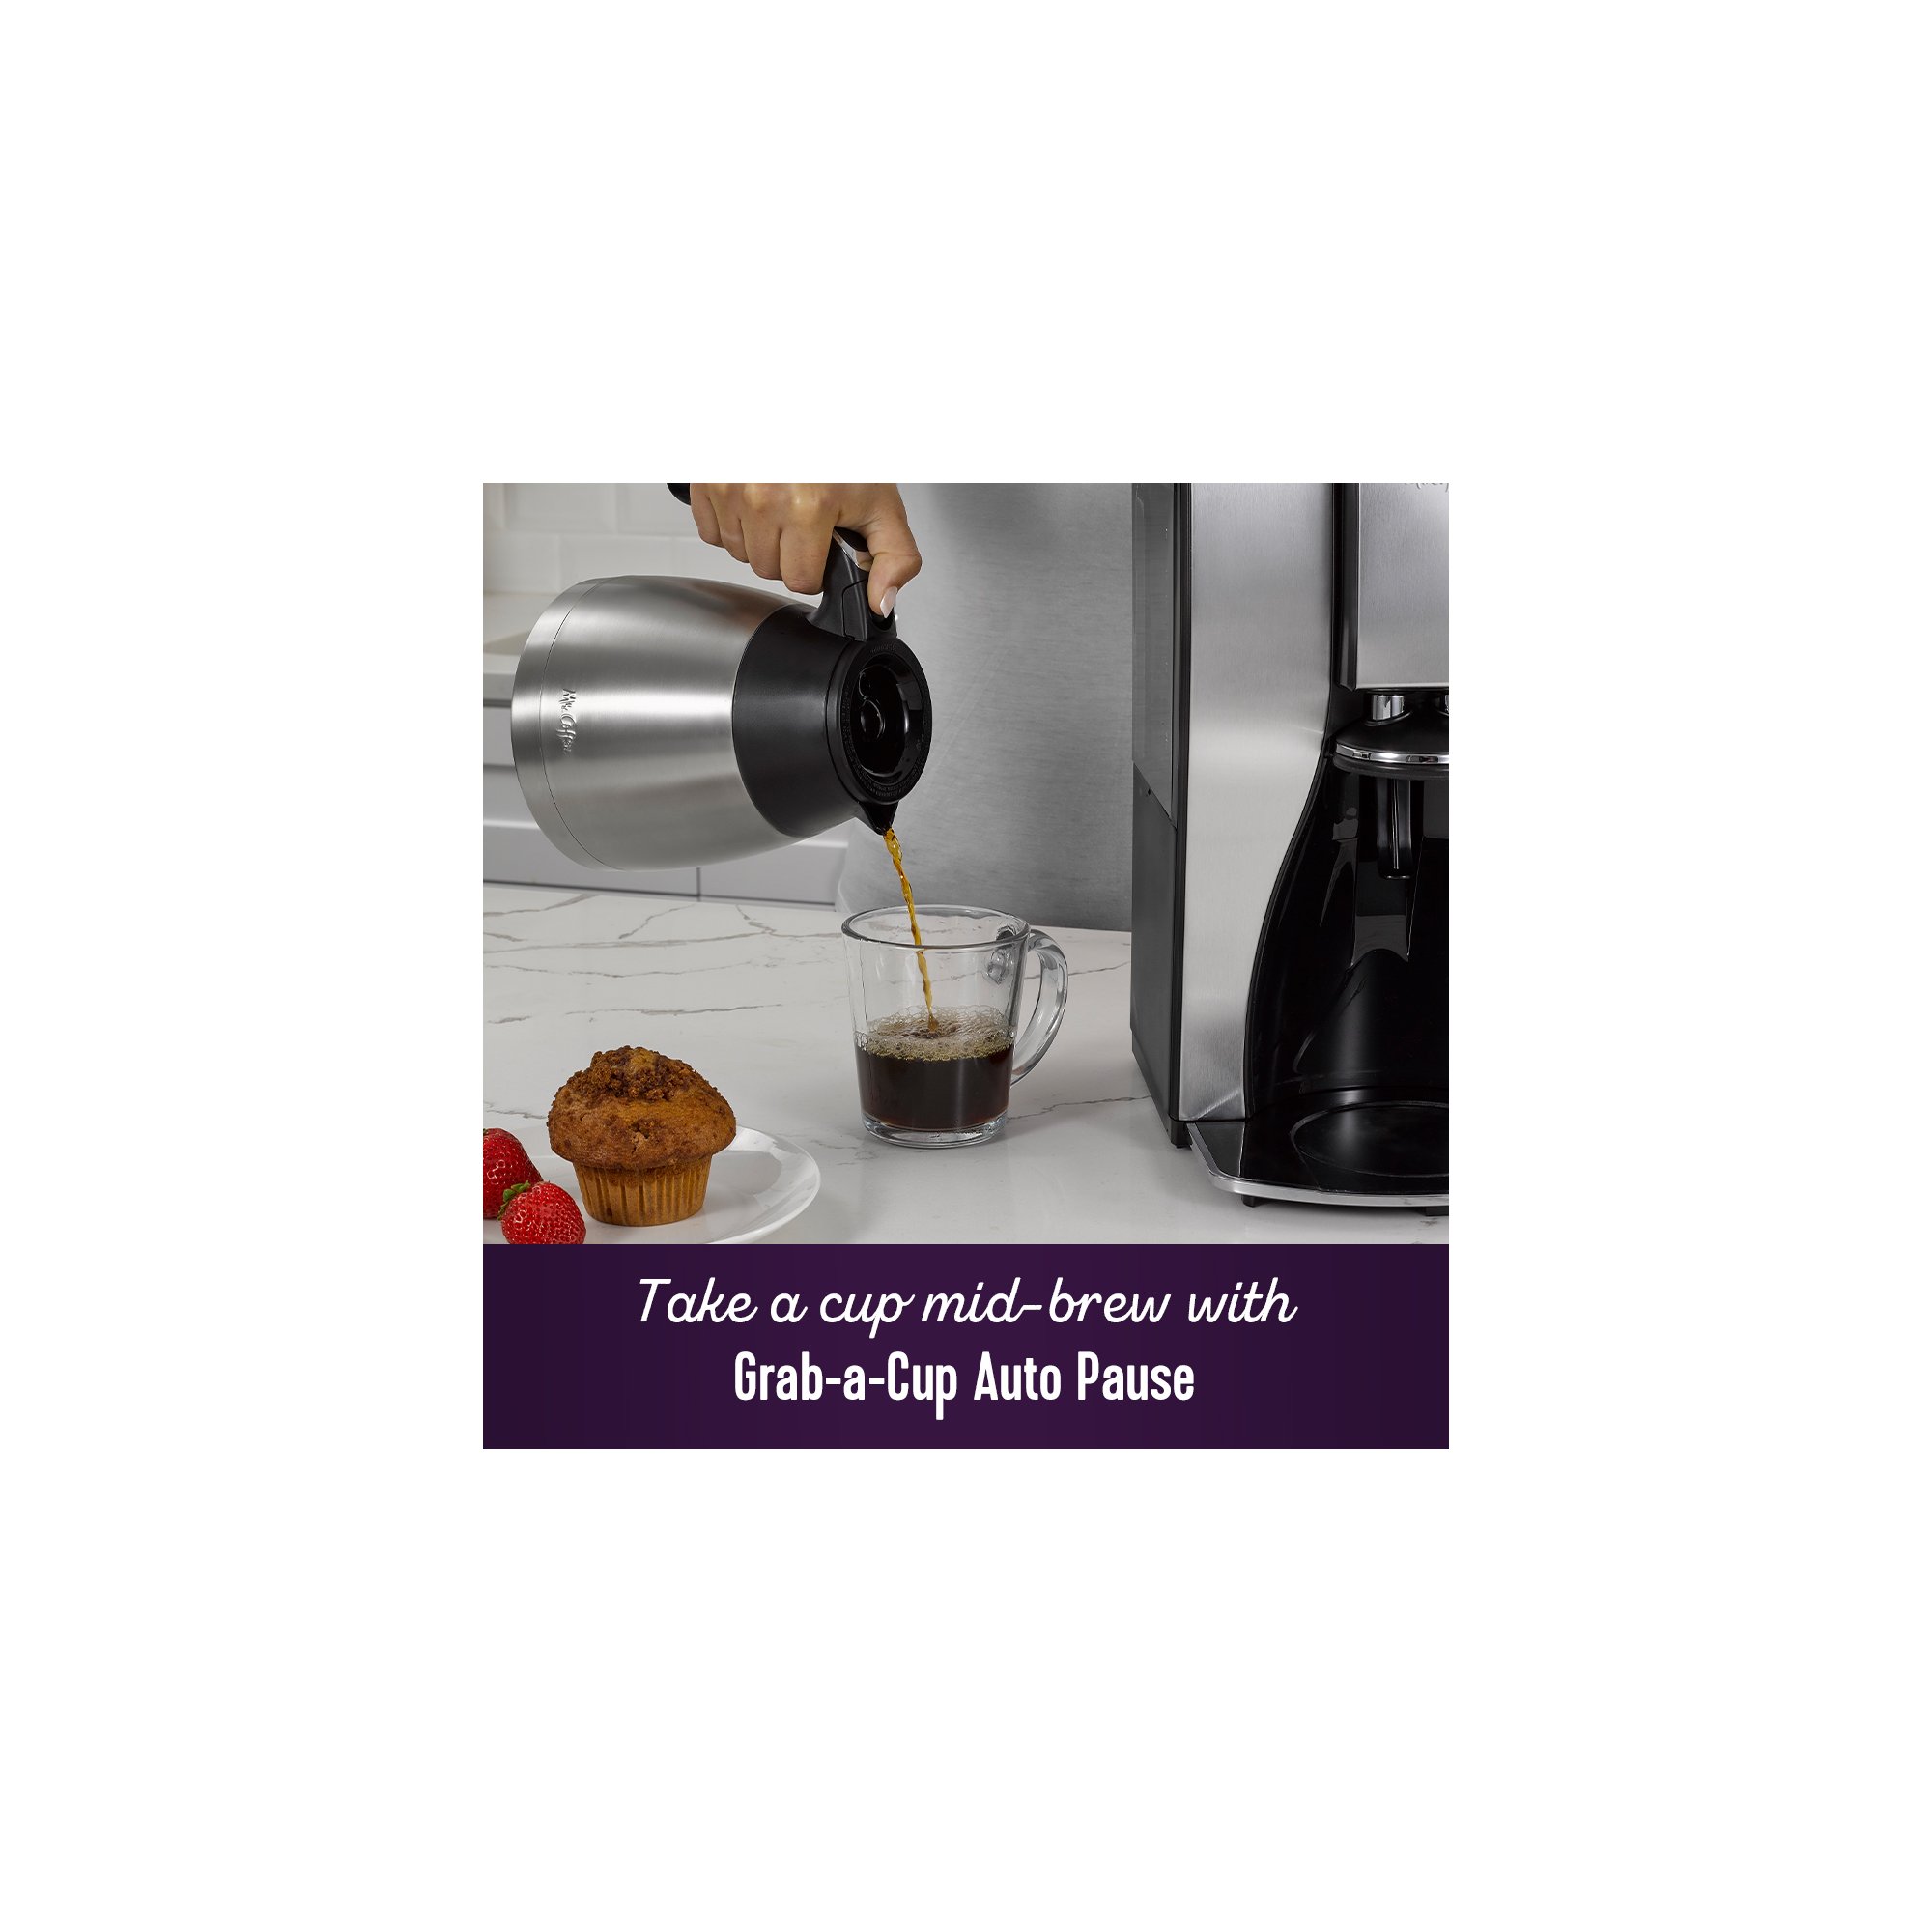 Mr. Coffee 10-Cup Programmable Coffeemaker Silver FTTX95-1 - Best Buy